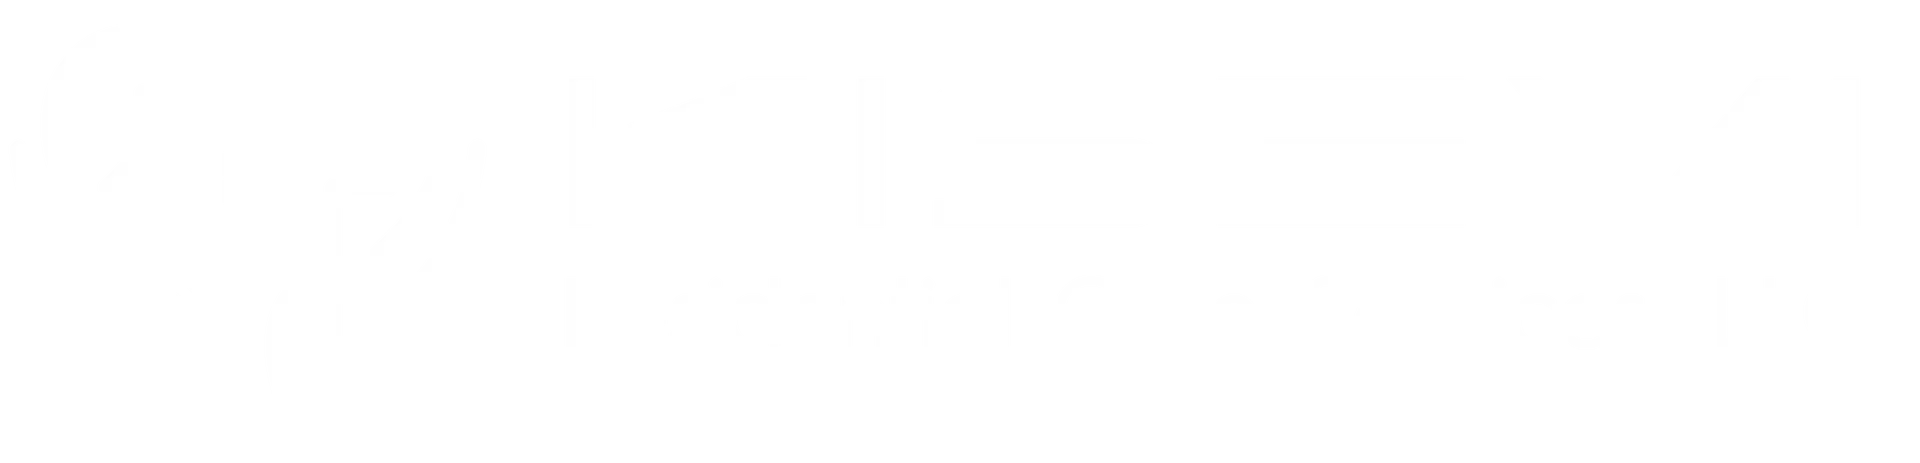 KISEVI-logo-white